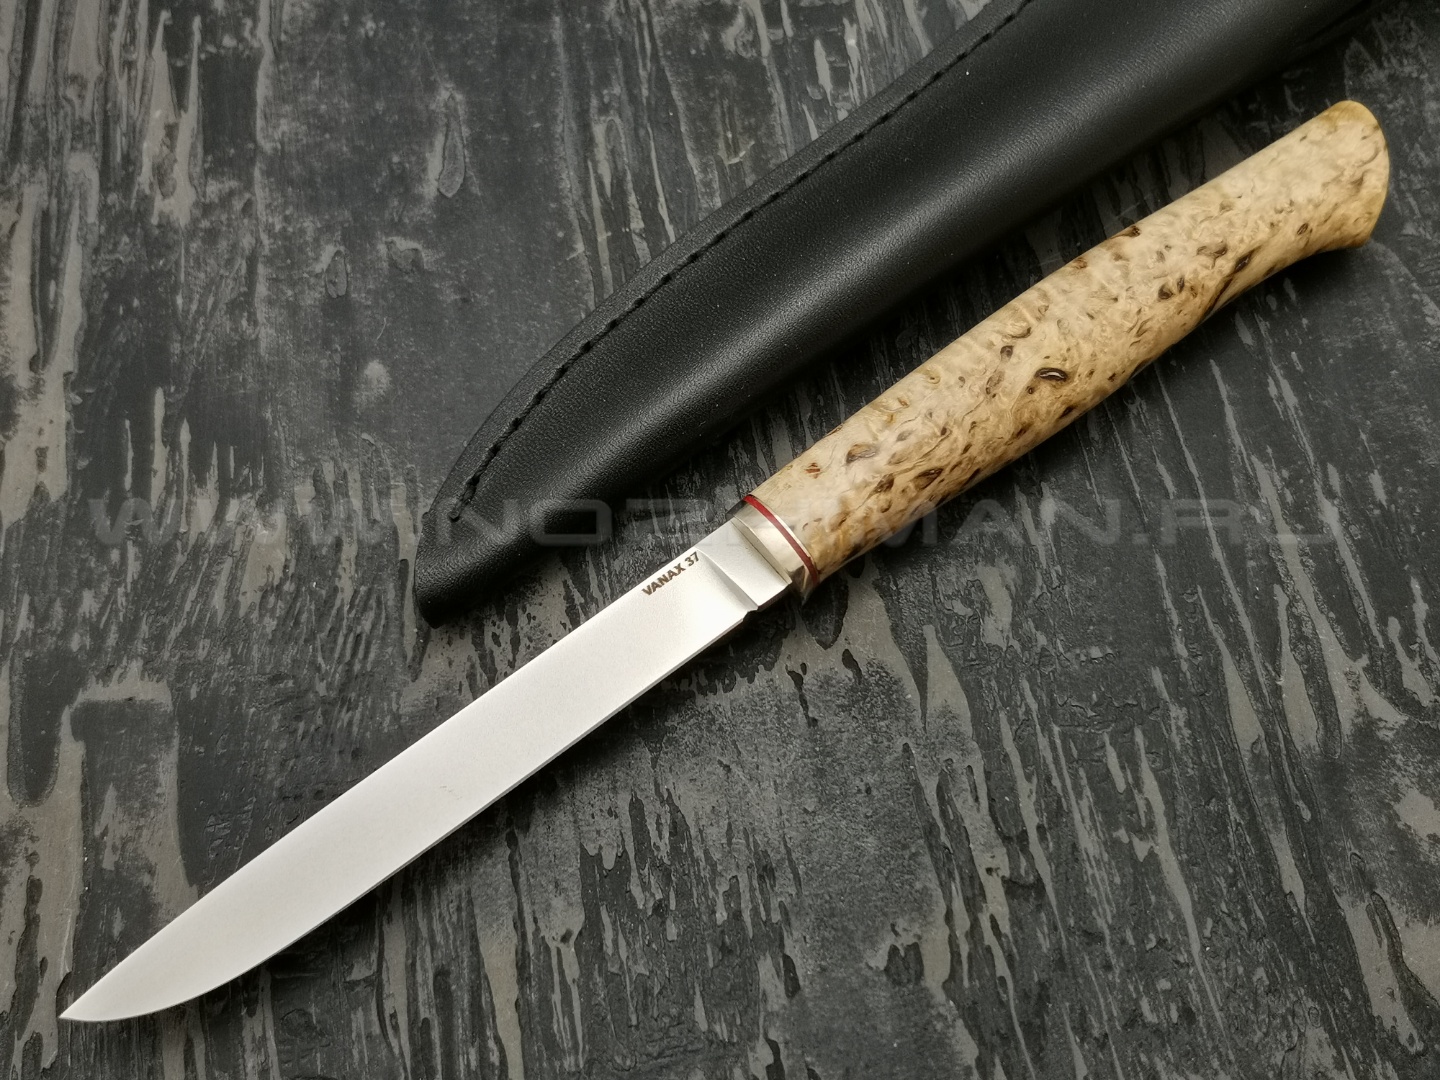 Кметъ нож Шило-3 сталь Vanax 37 рукоять стаб. карельская береза, мельхиор